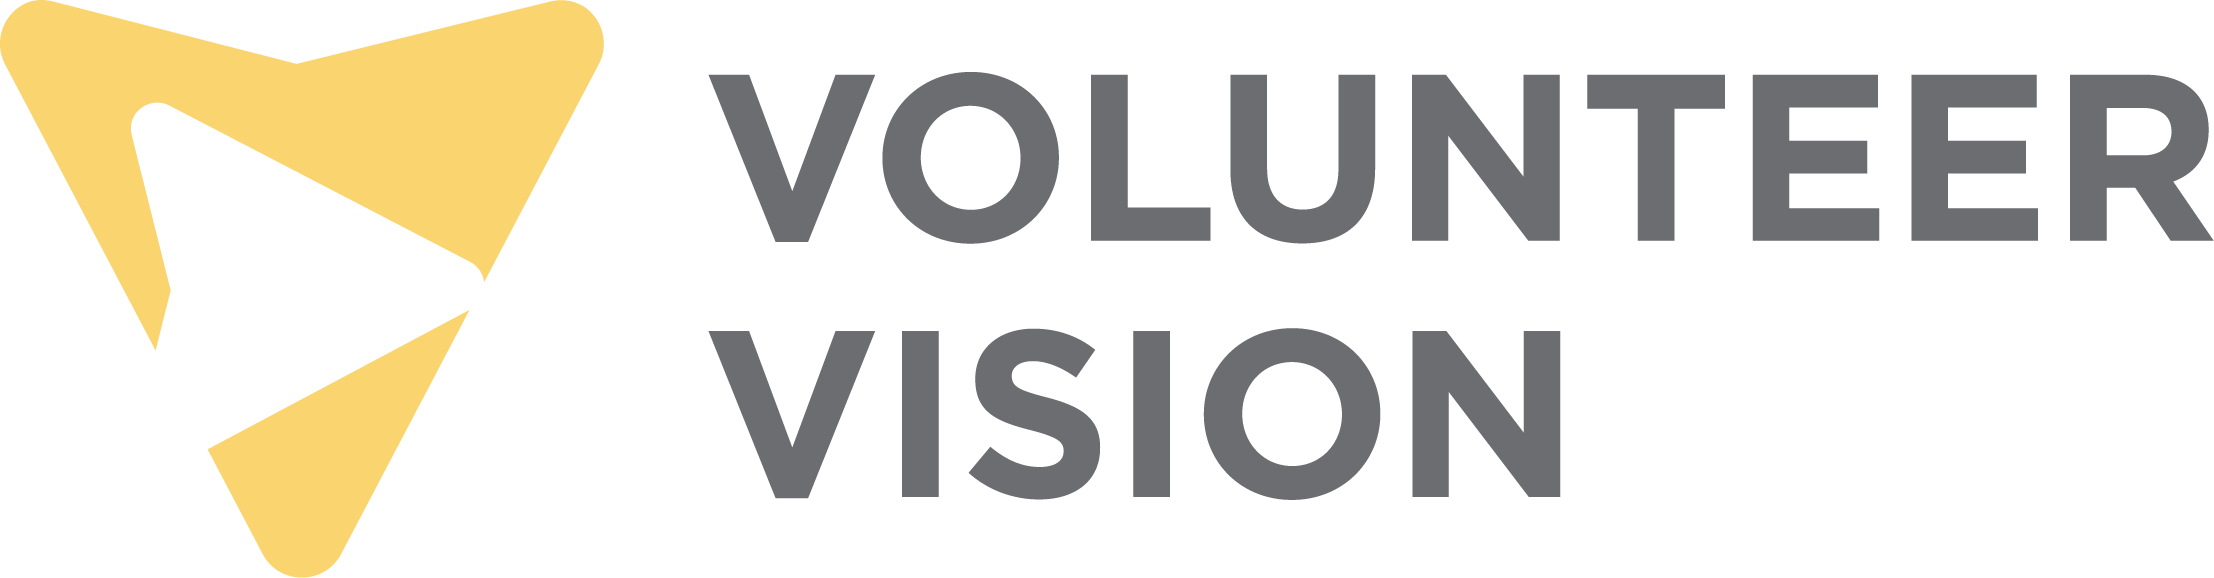 Volunteer Vision logo